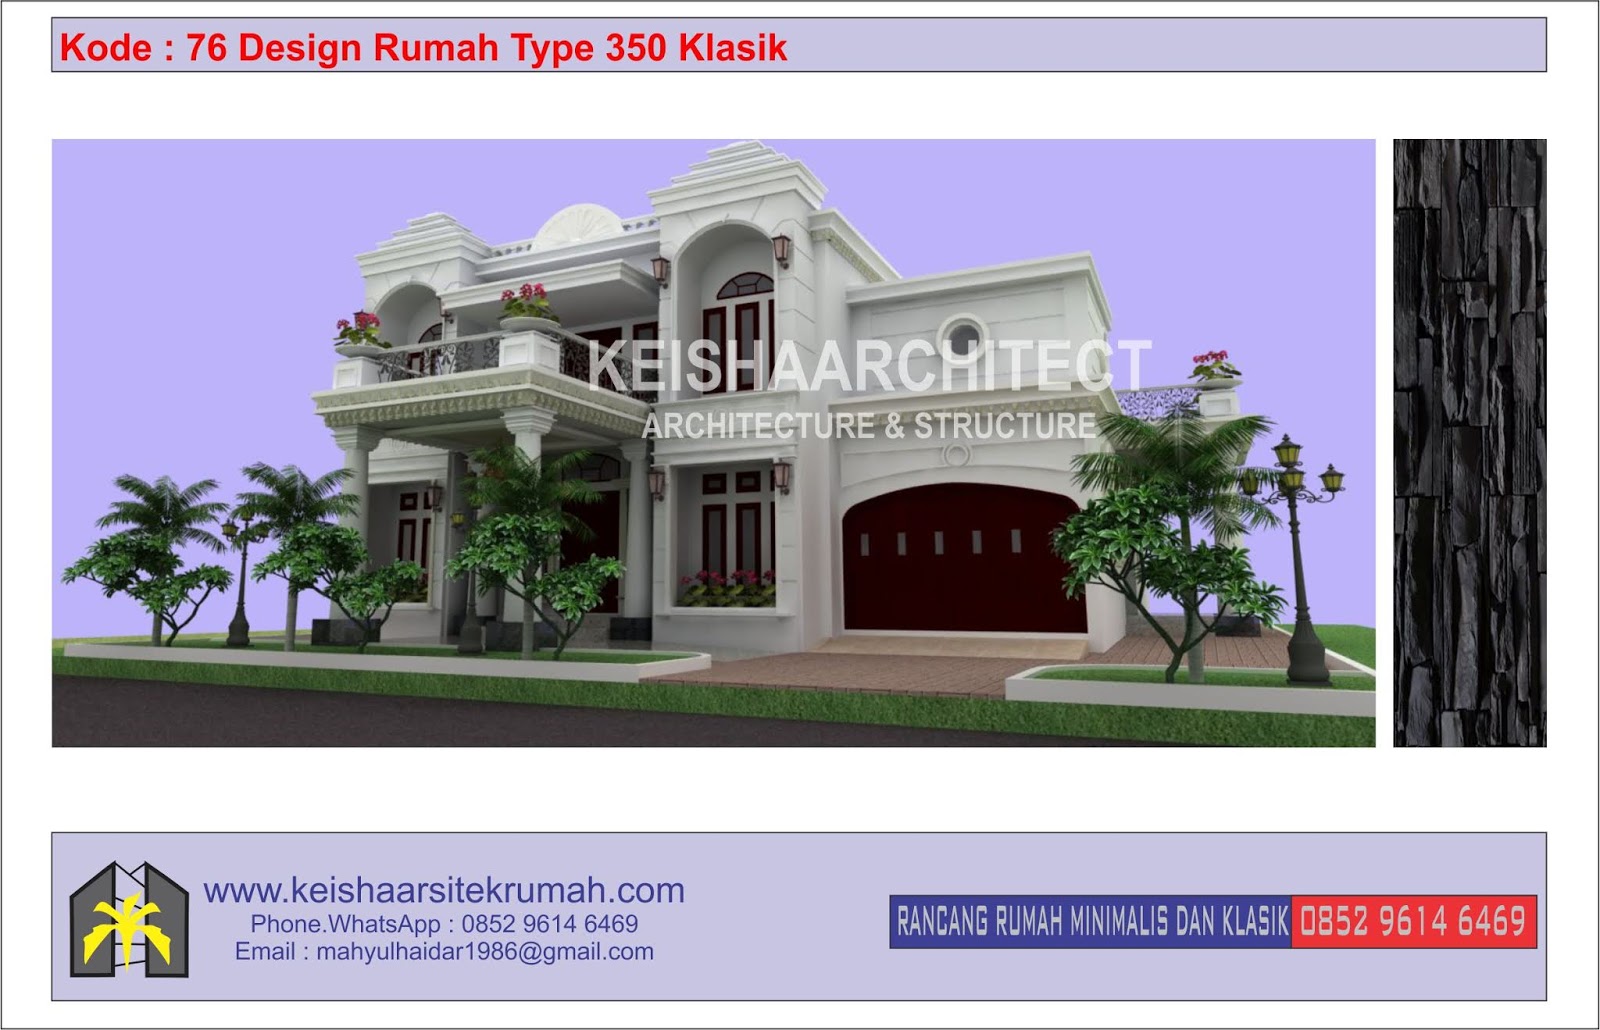 Kode 76 Design Rumah Type 350 Klasik Lokasi Banda Aceh